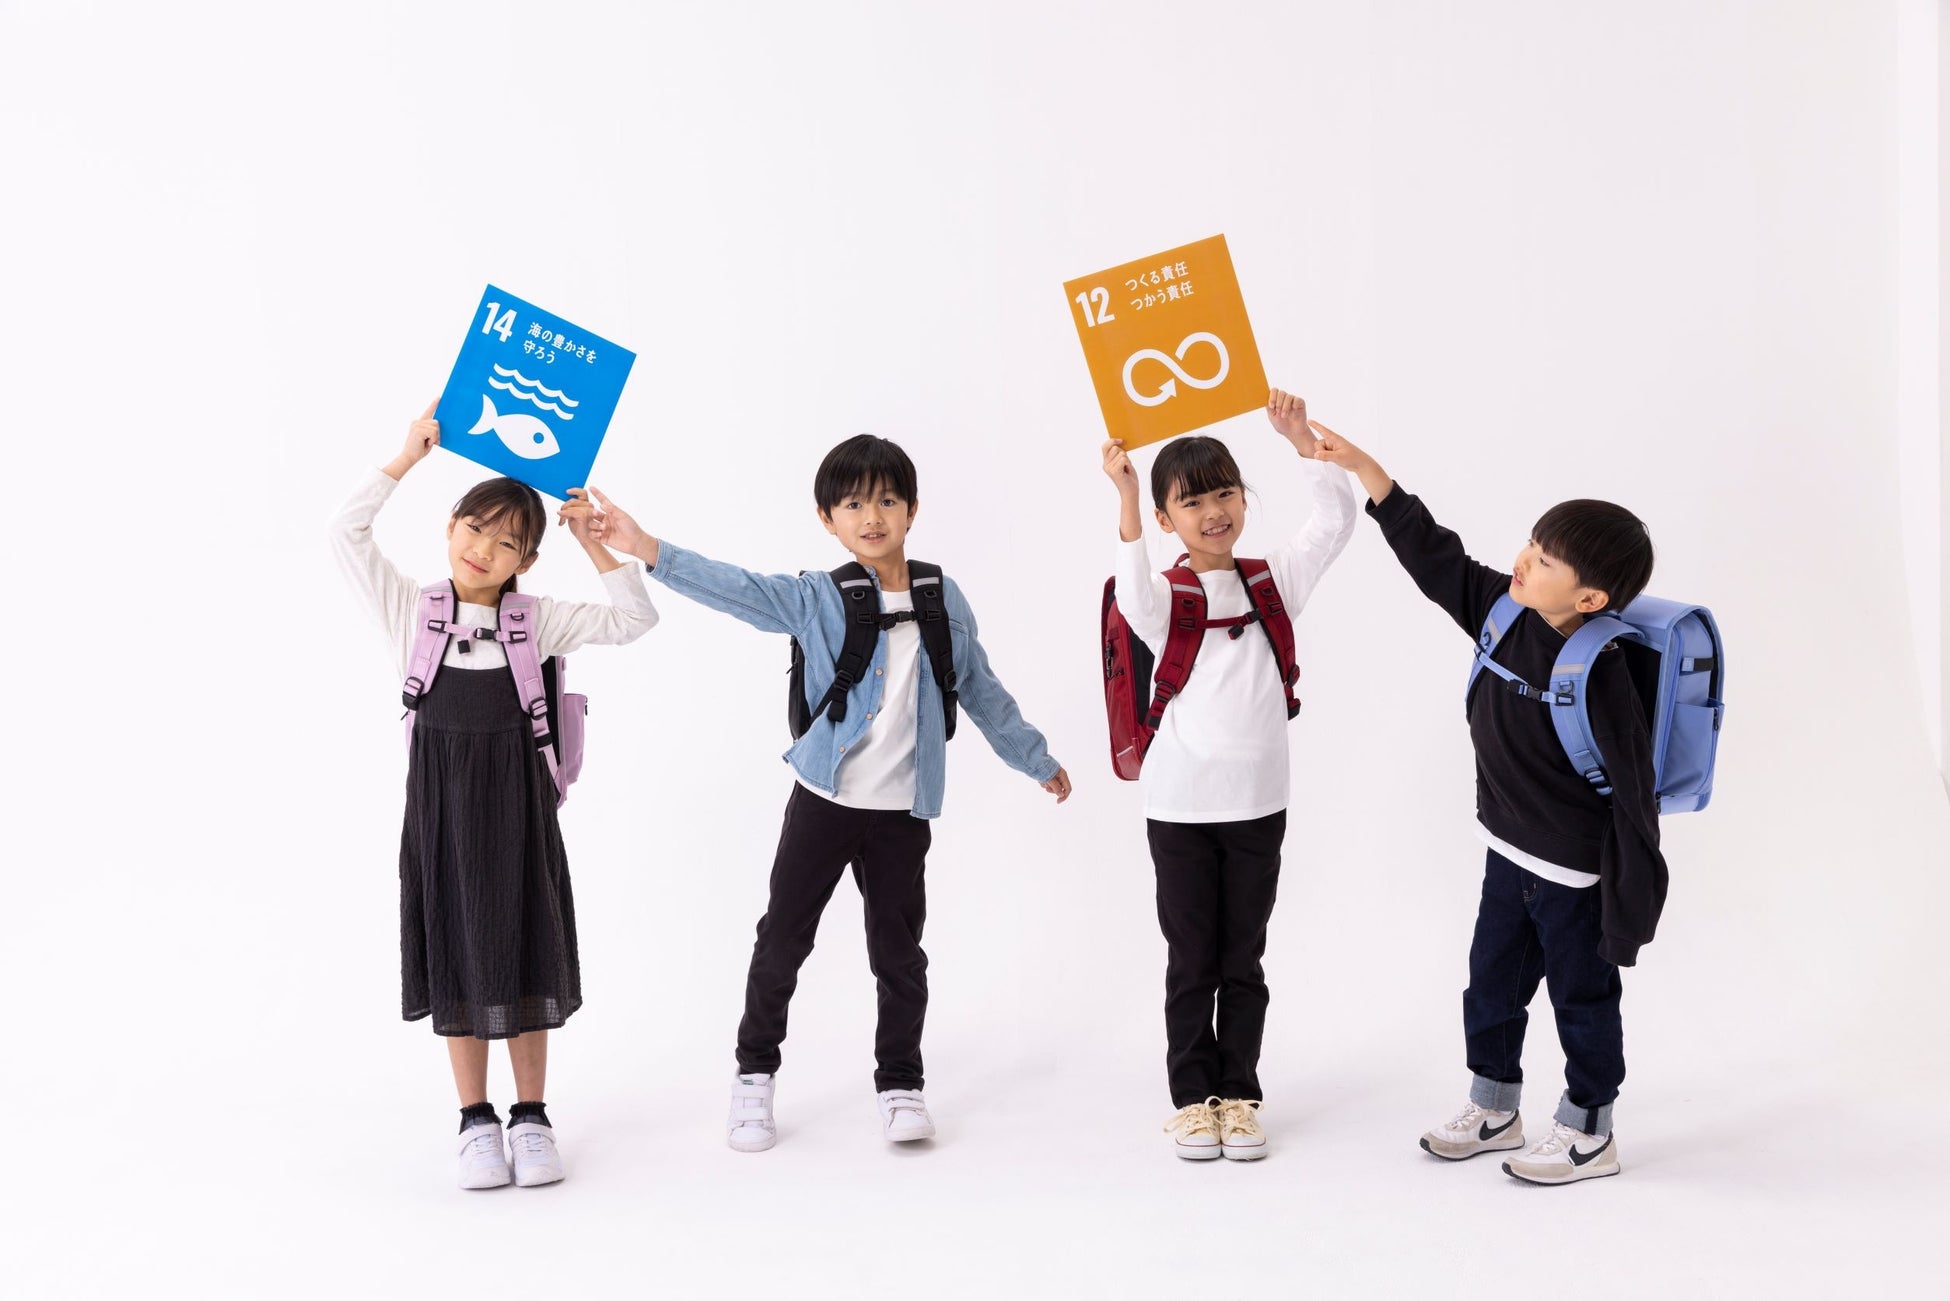 「日本一の鞄の産地豊岡から、子どもたちの未来のために、本気で取り組むSDGsと徹底したものづくりへのブレない想いとは」特別インタビューのサブ画像3